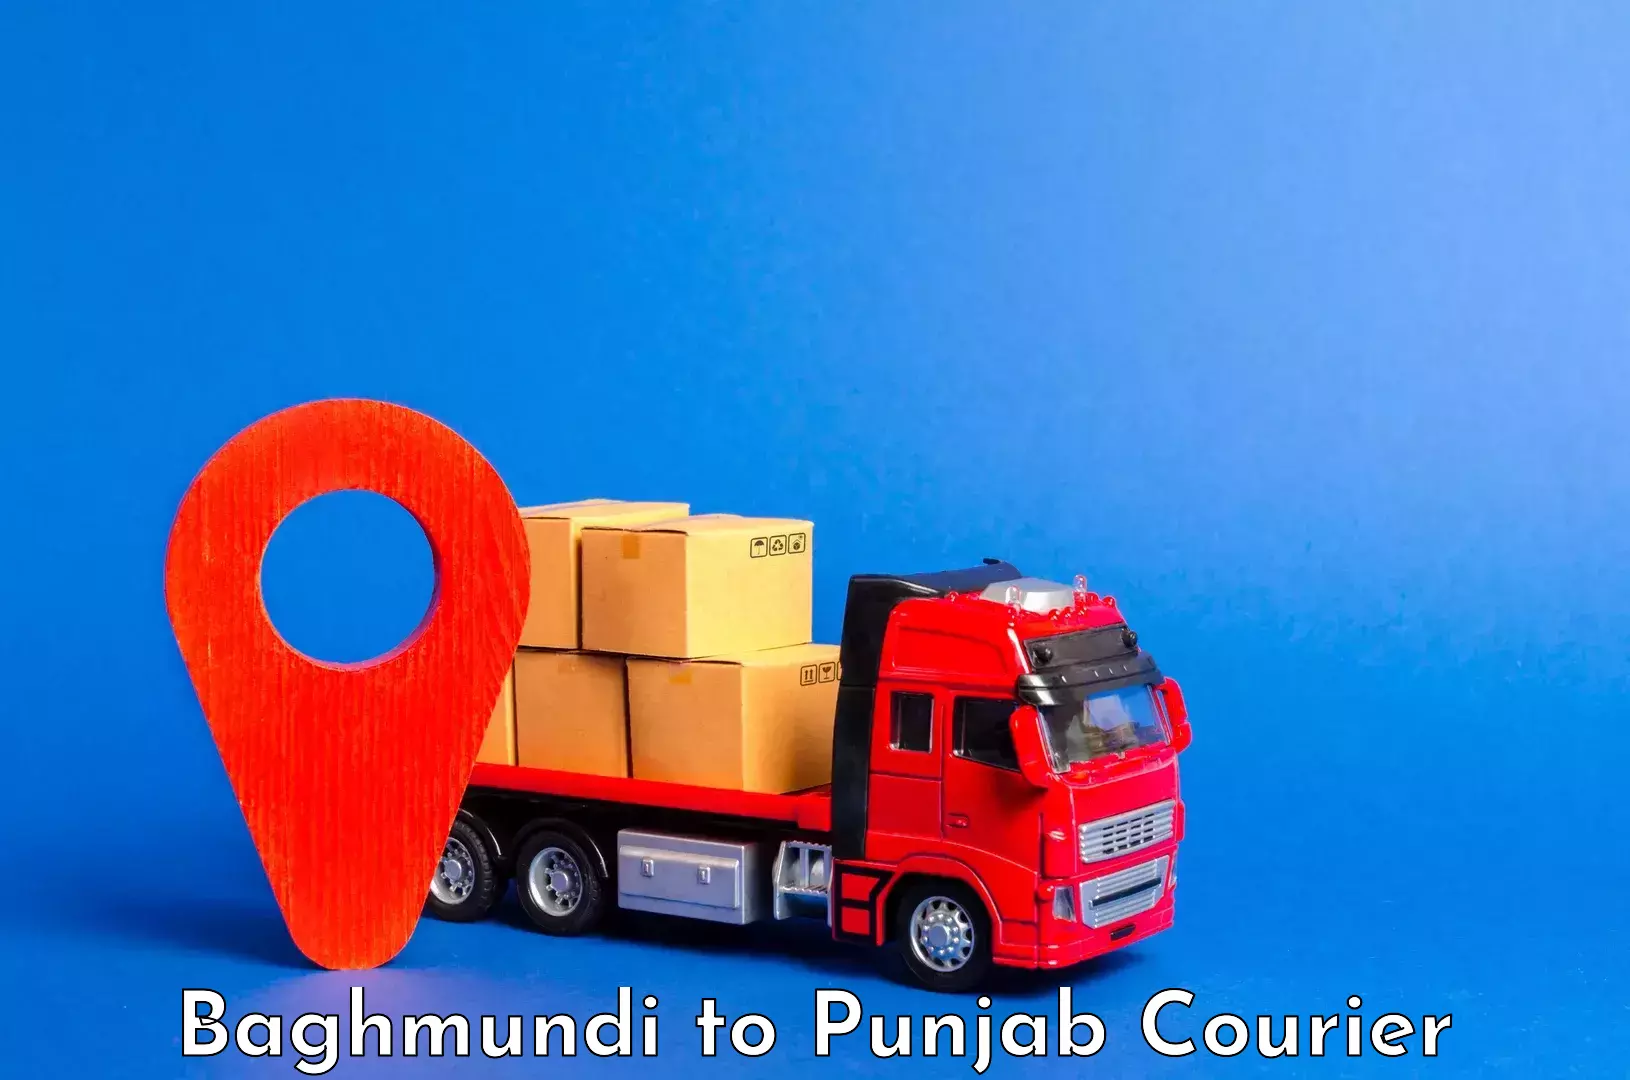 Luggage delivery app Baghmundi to Jalandhar